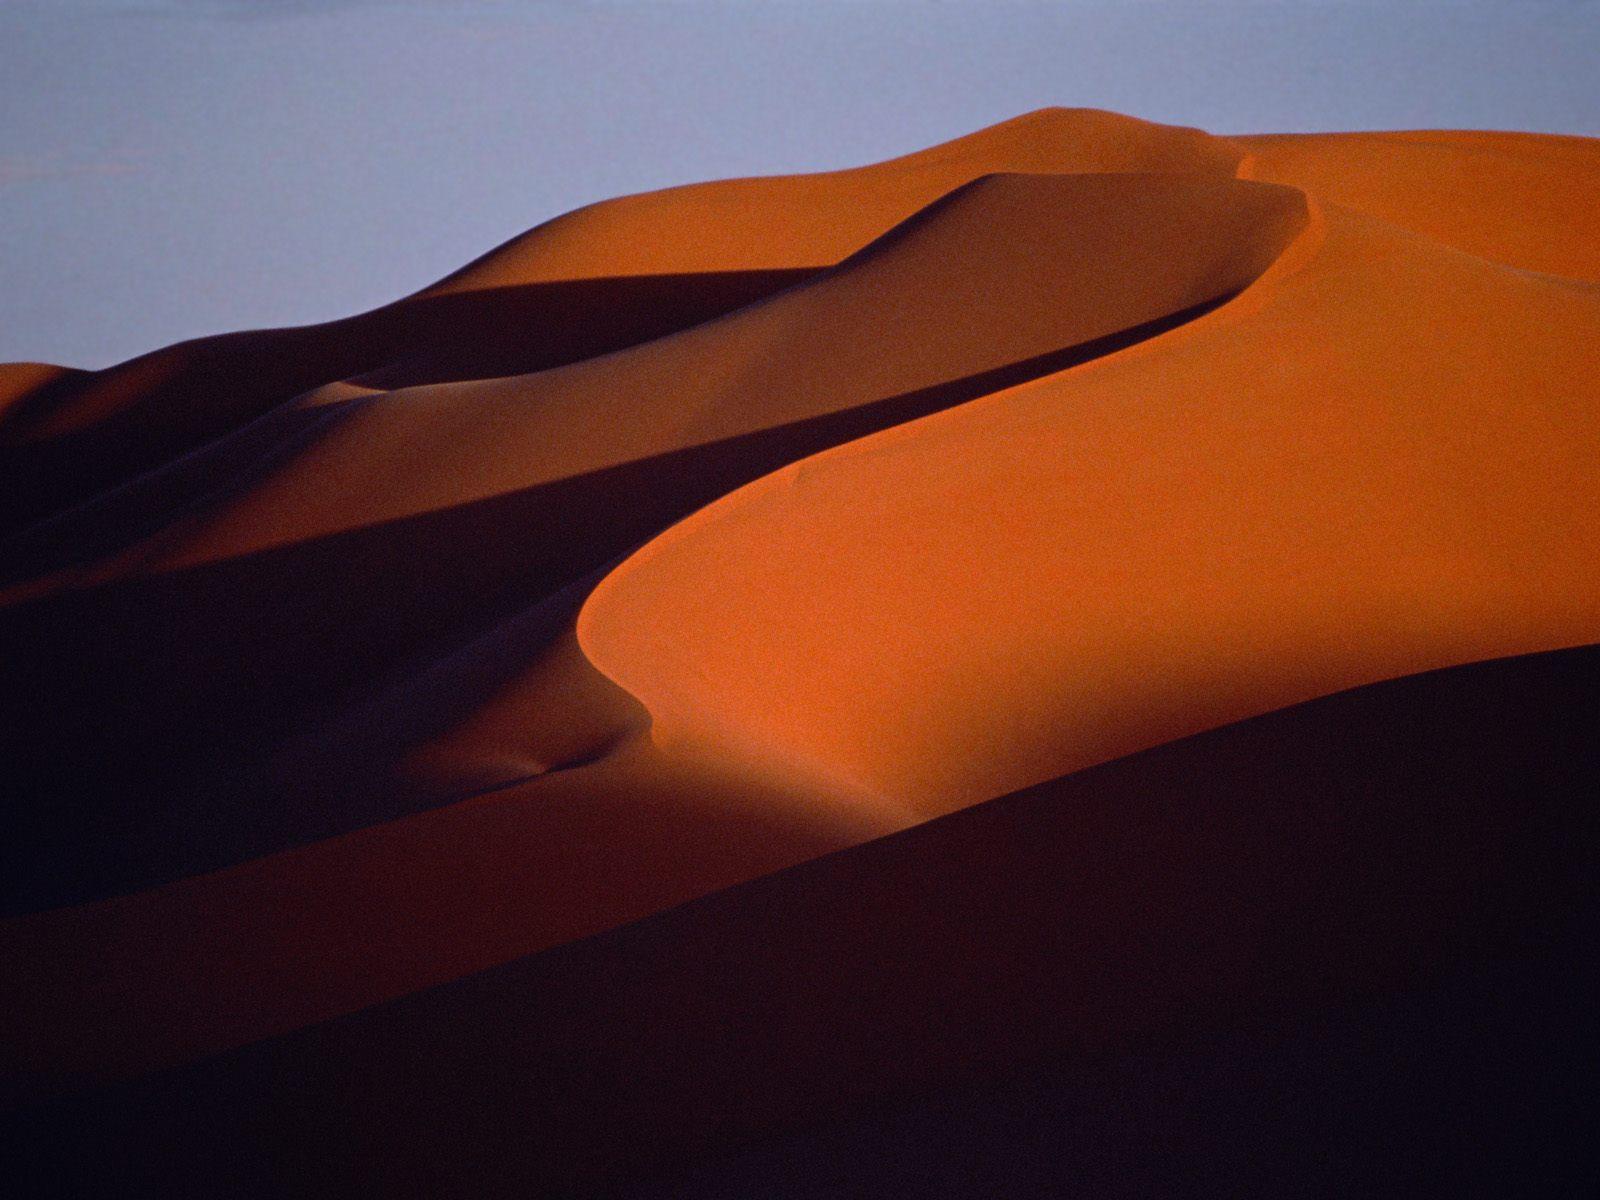 Sand dunes landscape free desktop background wallpaper image